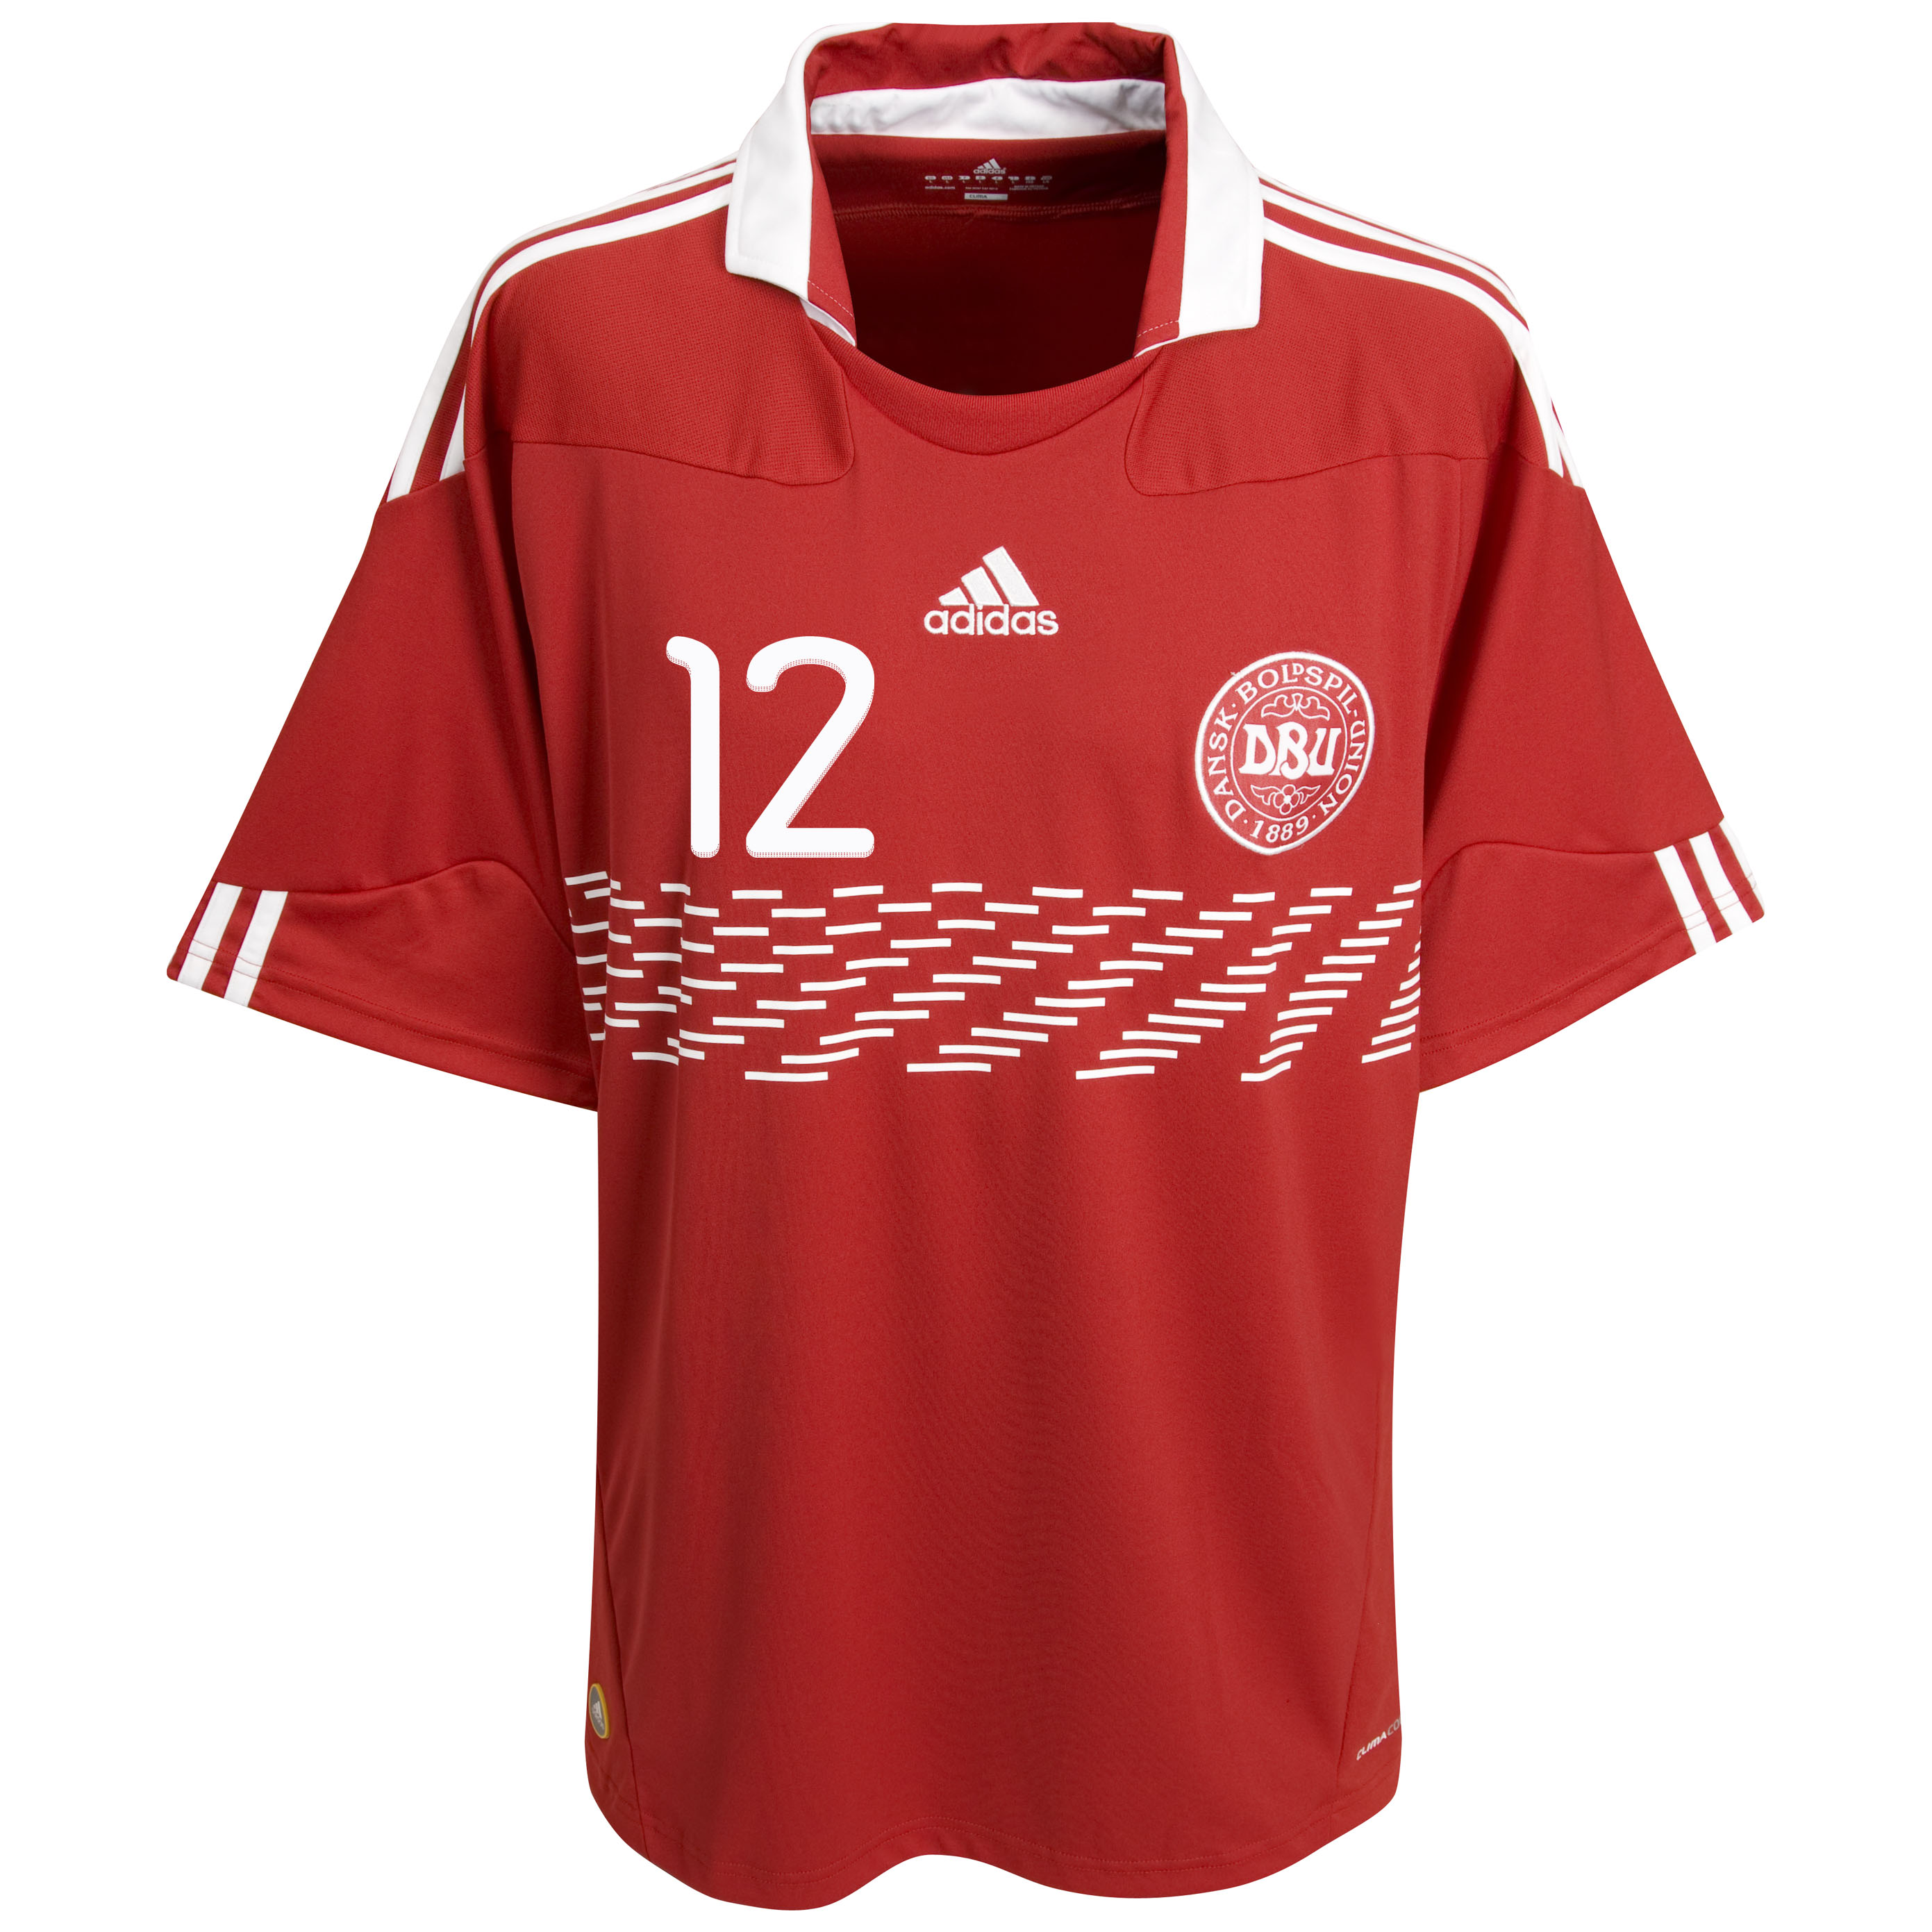 الملابس الرسمية لكأس العالم 2010 Kb-73524a